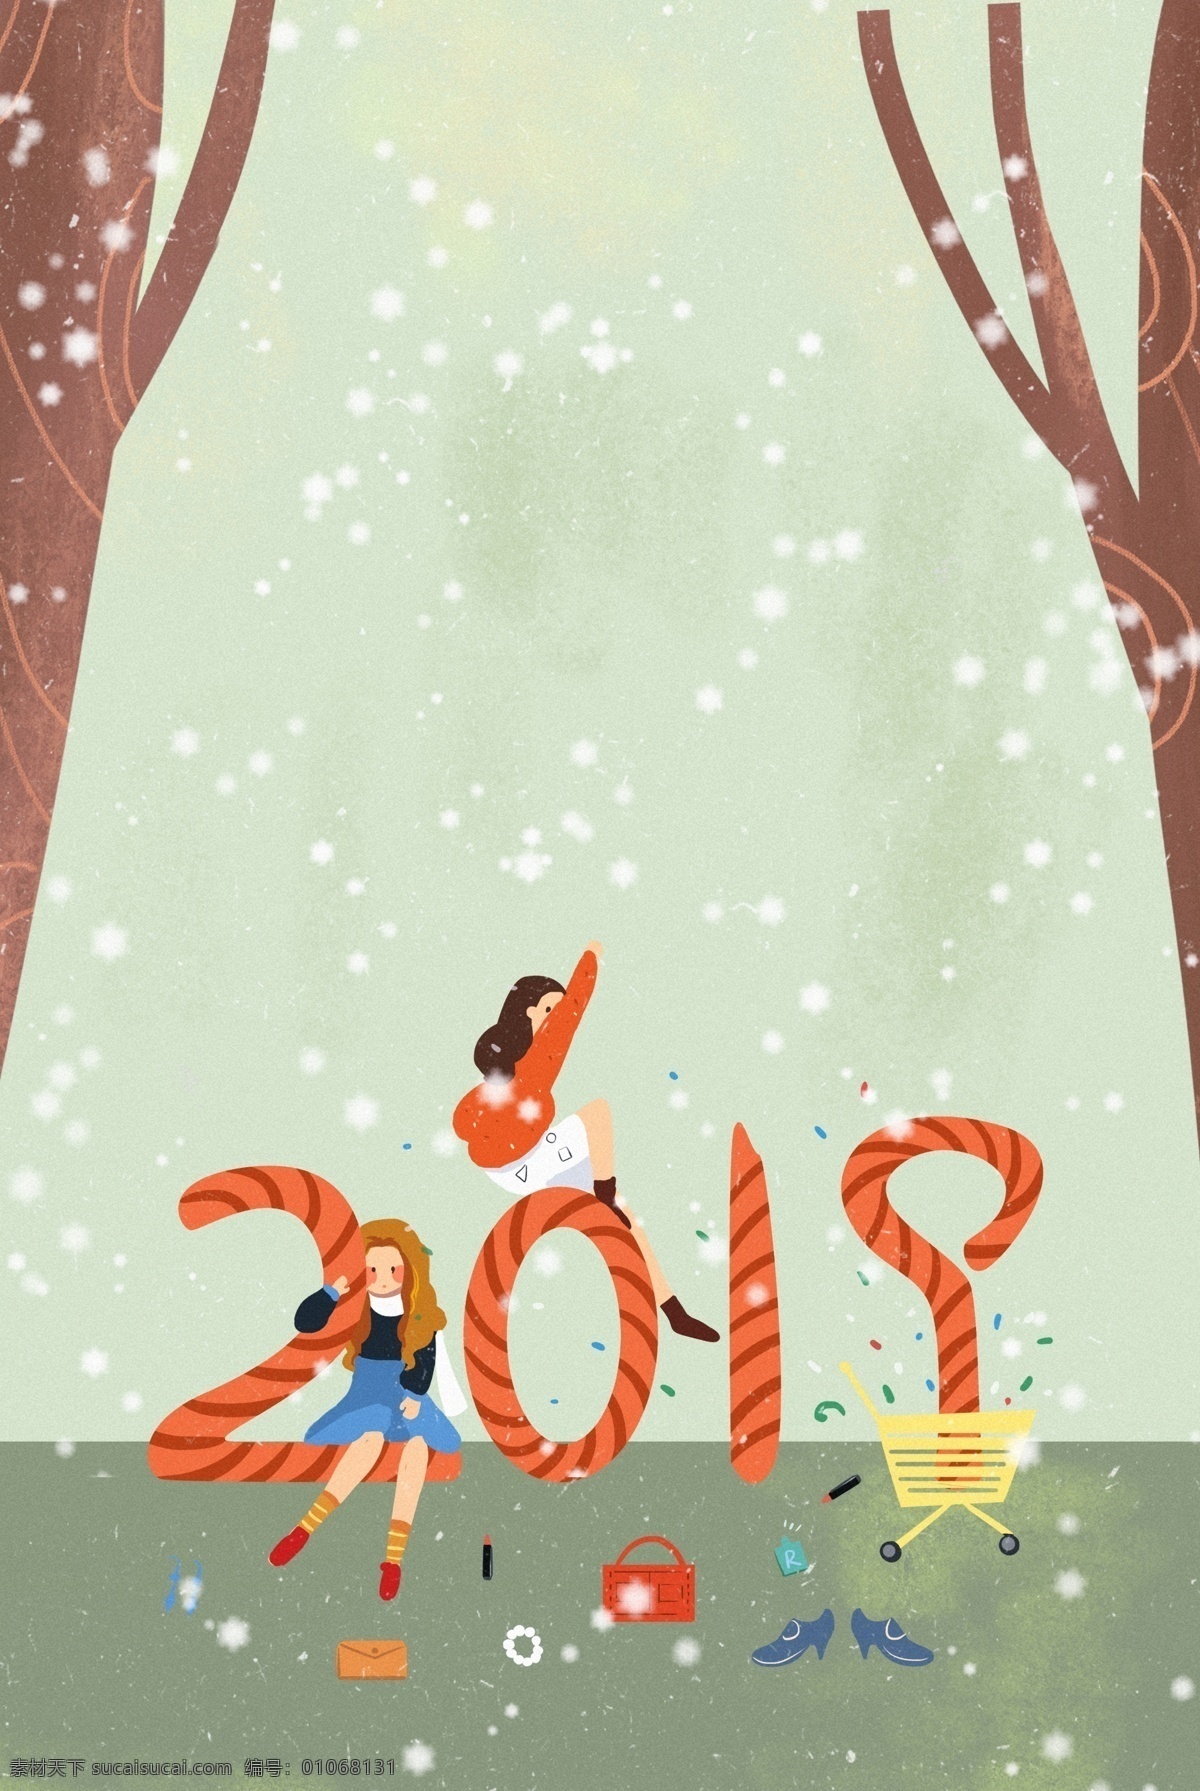 2019 迎新 年 创意 插画 海报 新年 跨年 人物 女孩 购物 插画风 促销海报